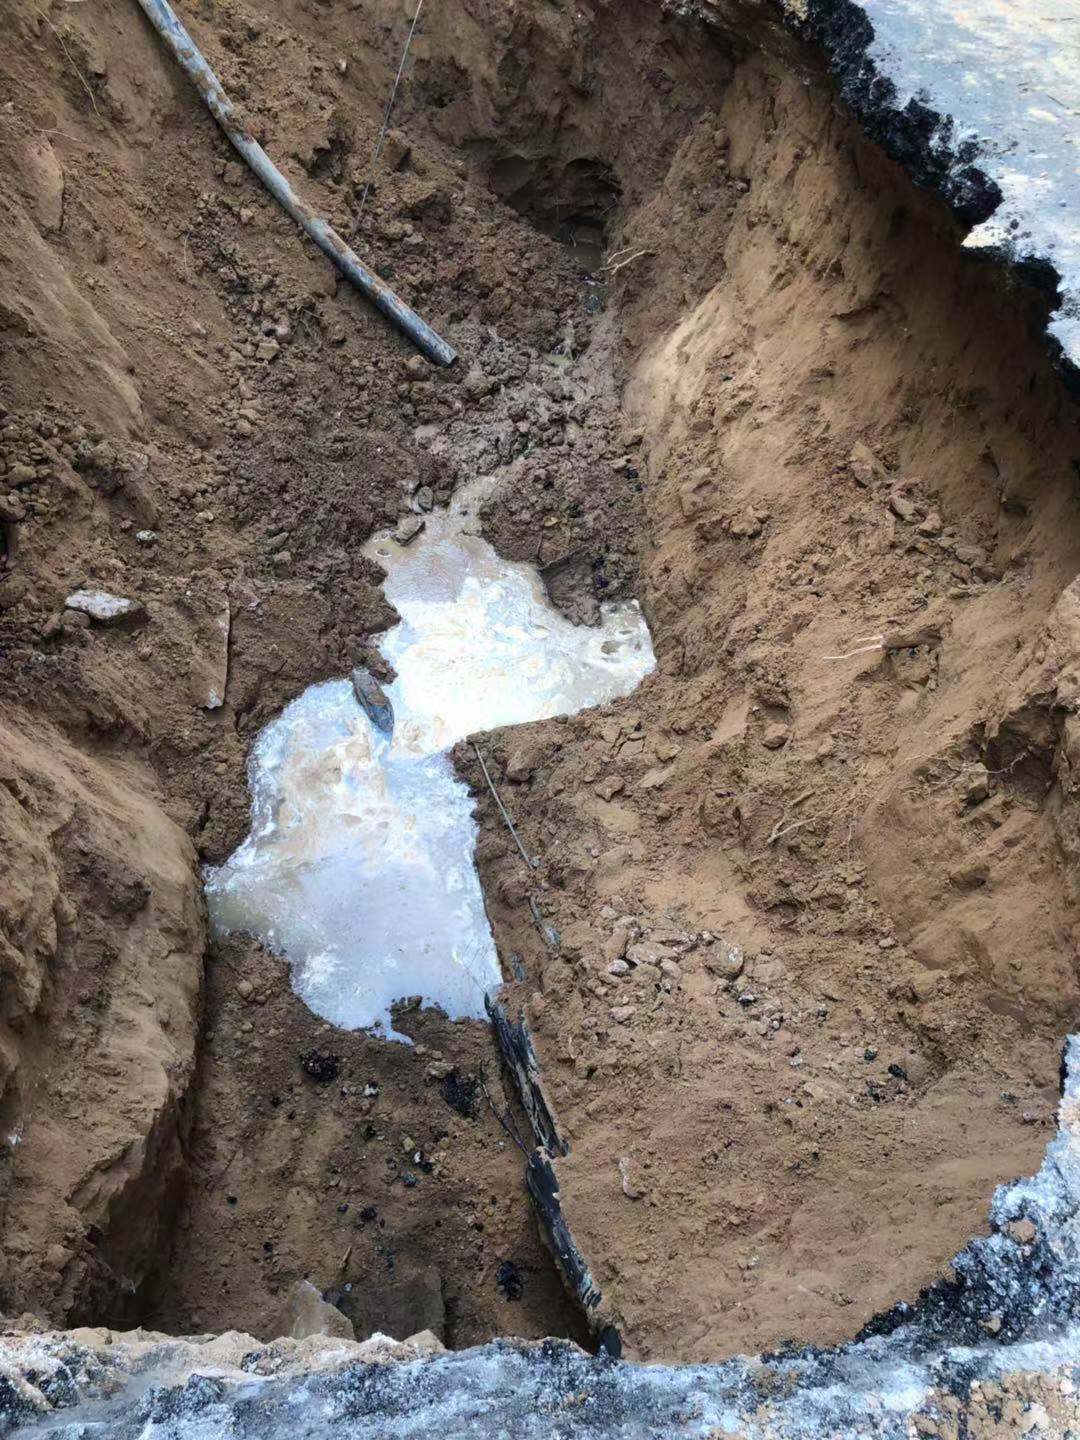 台南永康區路面突塌陷 道路封閉緊急灌漿搶修 | 蕃新聞